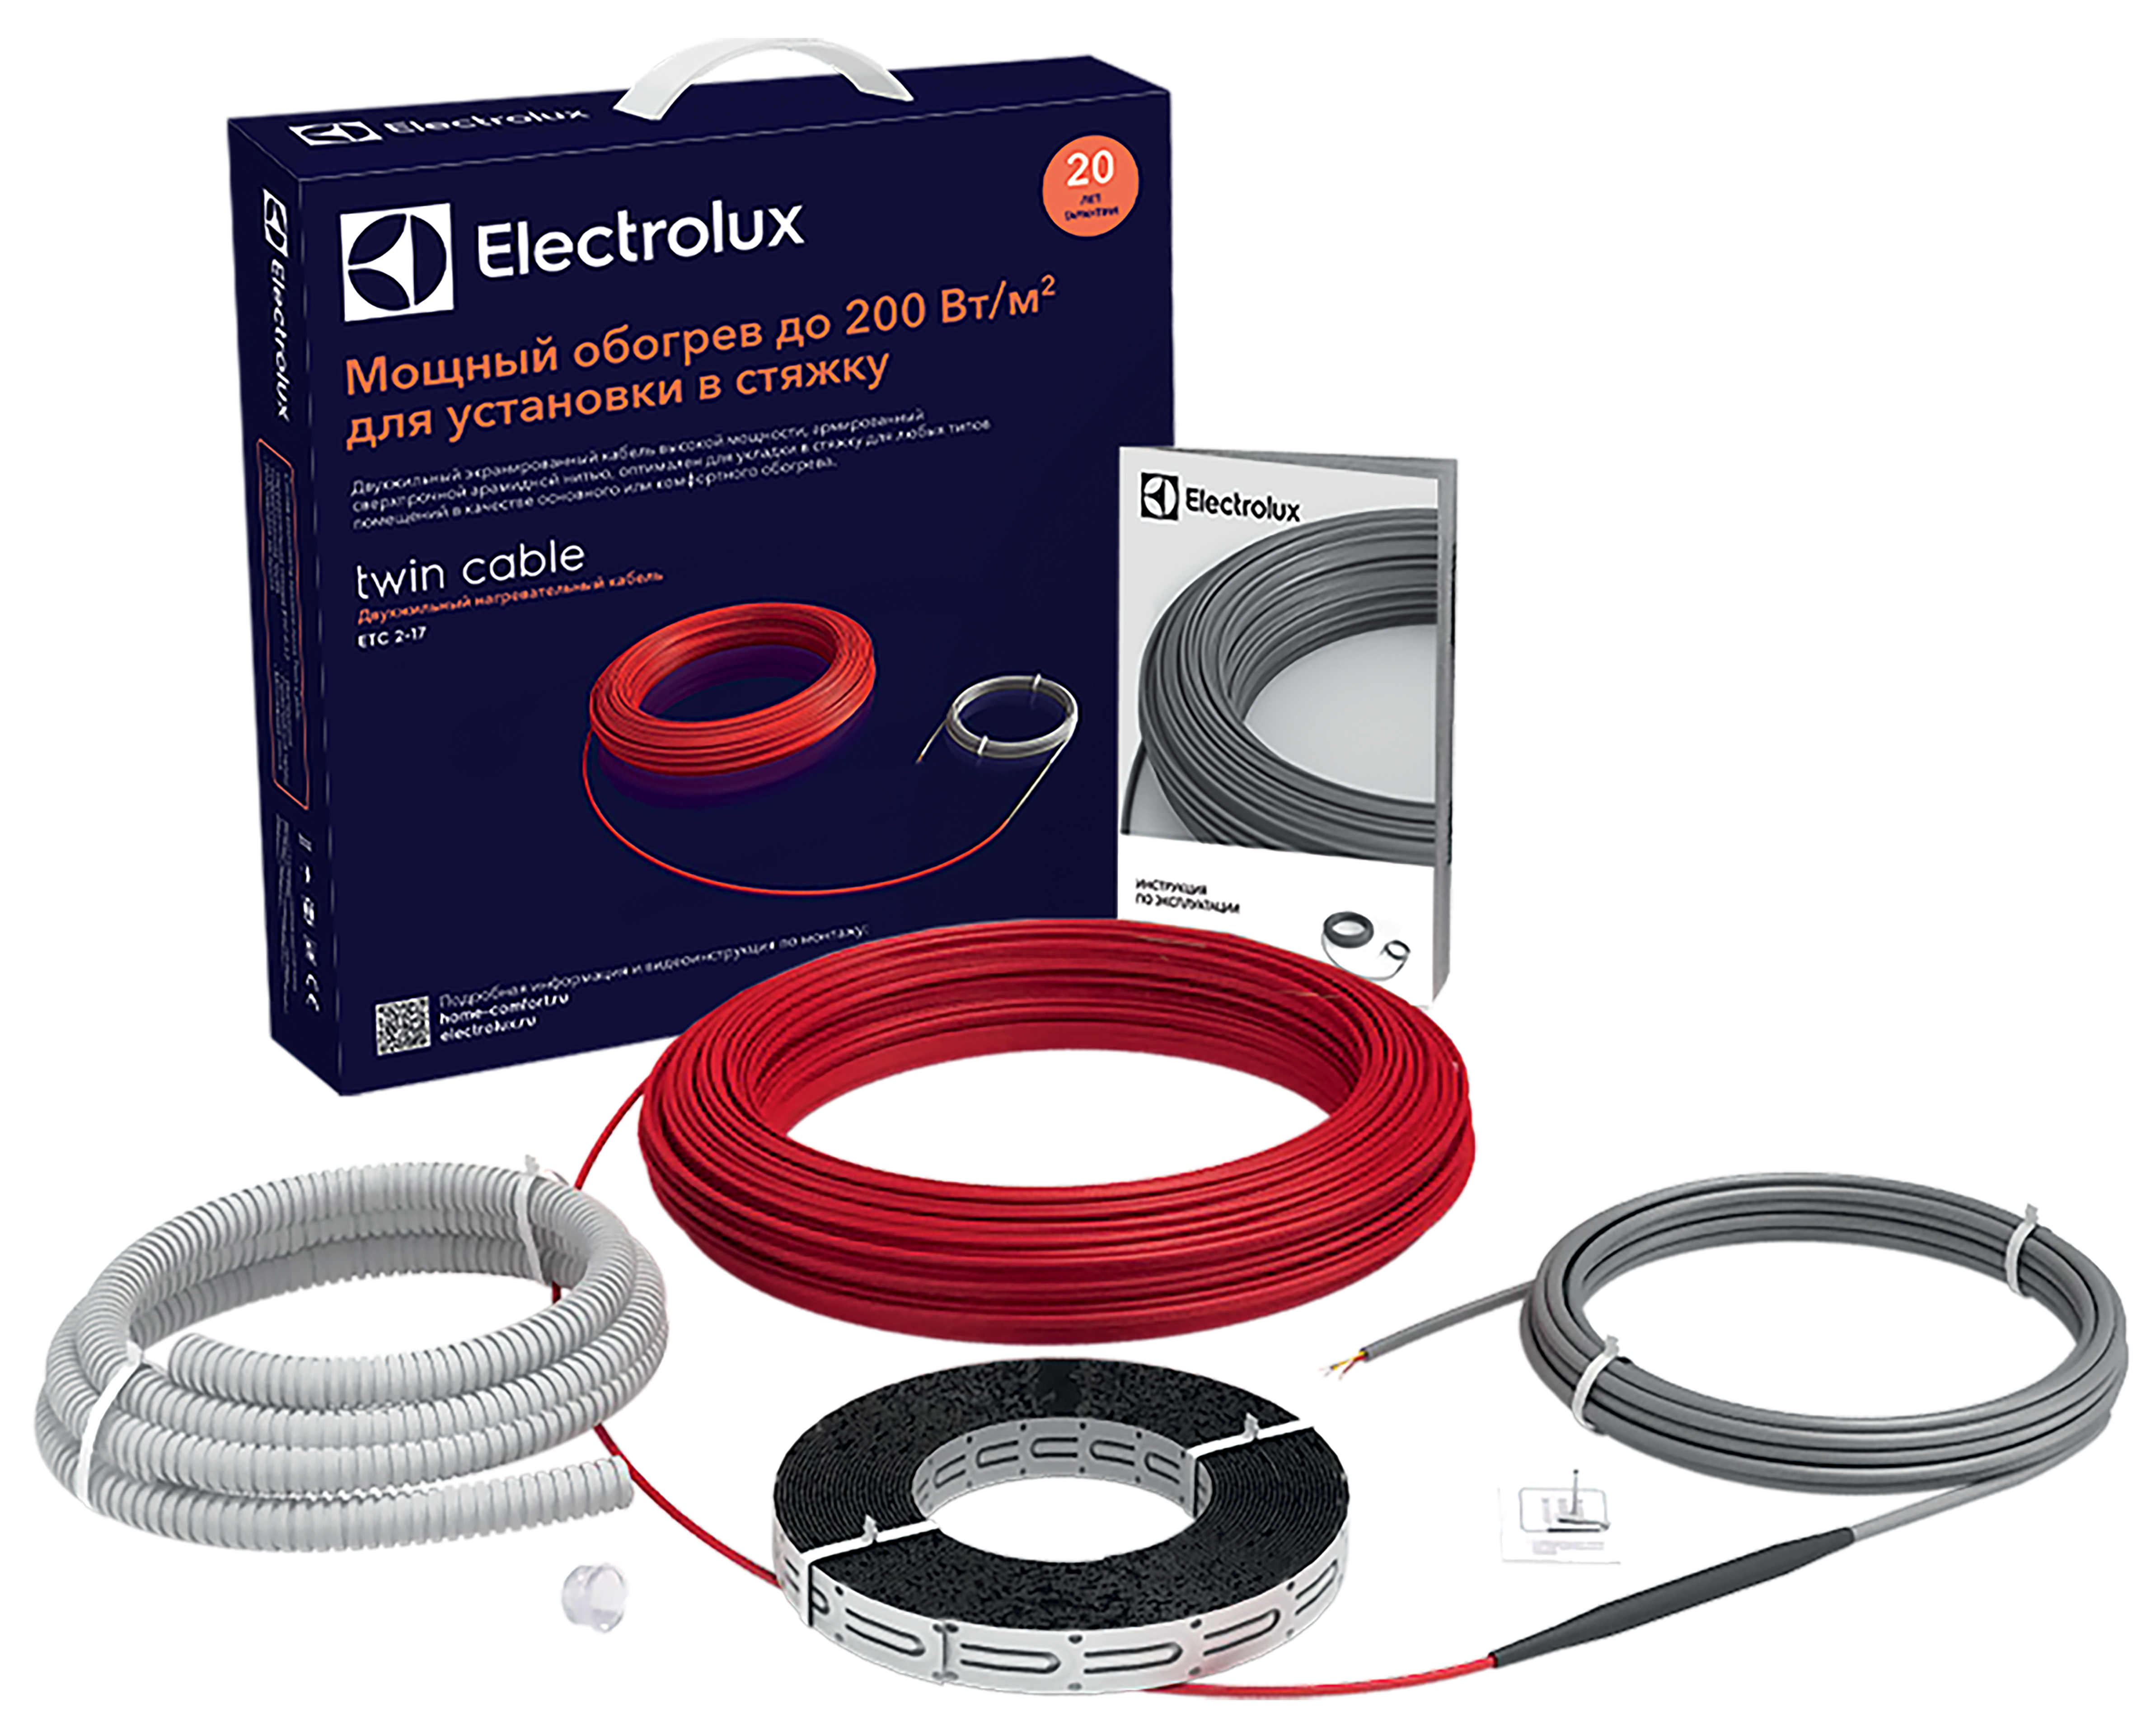 Характеристики тепла підлога electrolux в стяжку Electrolux Twin Cable ETC 2-17-200